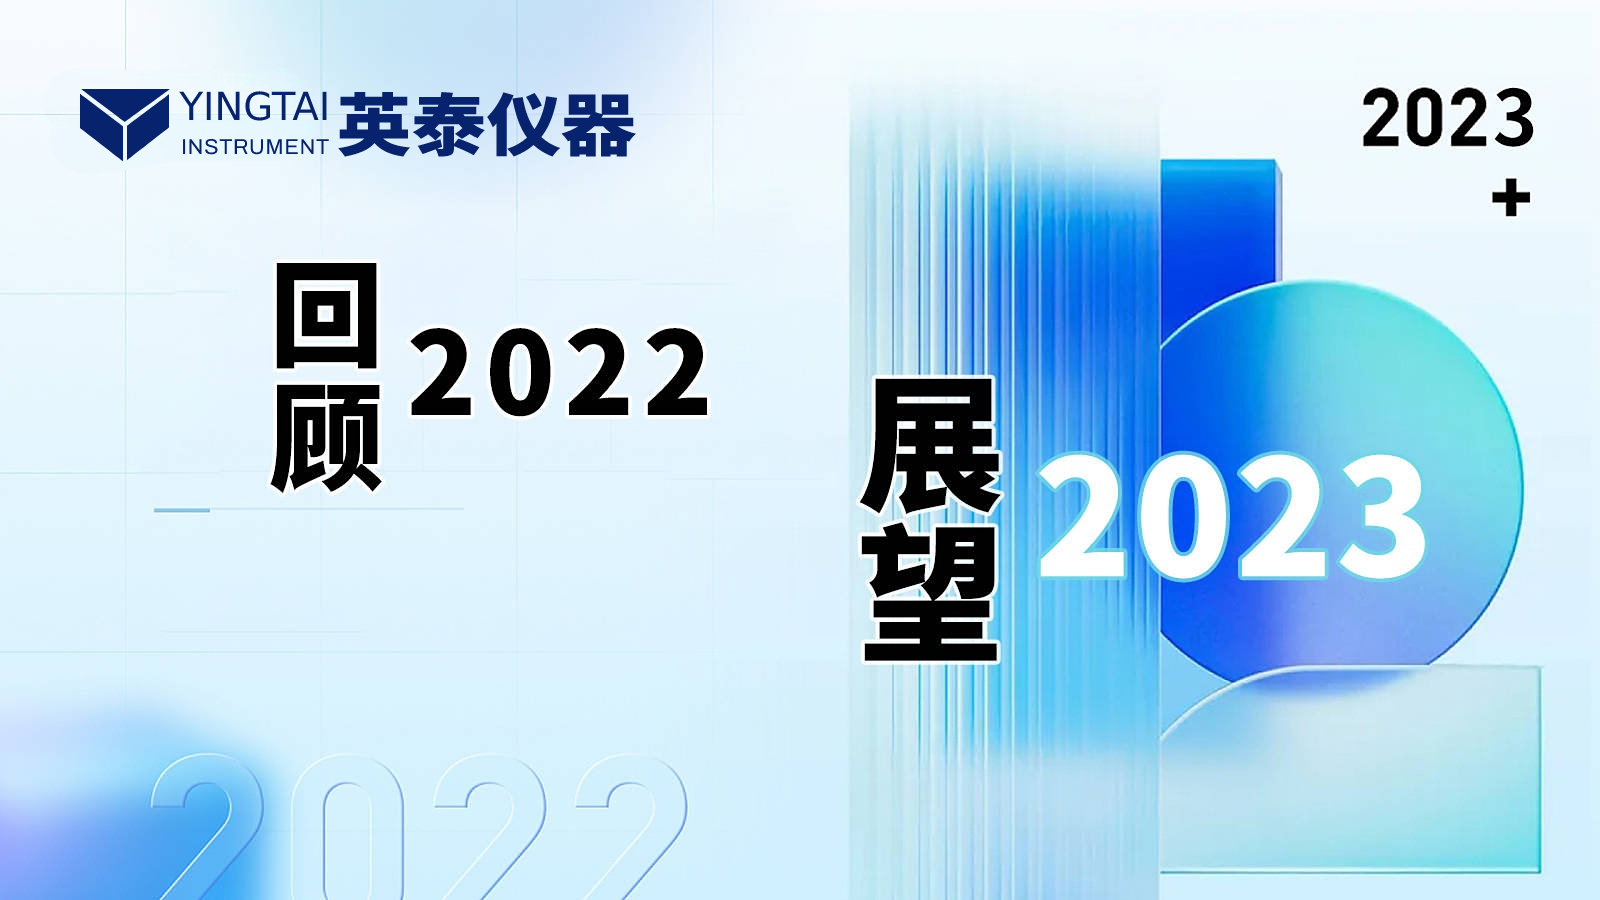 长沙英泰仪器有限公司——回顾2022，展望2023